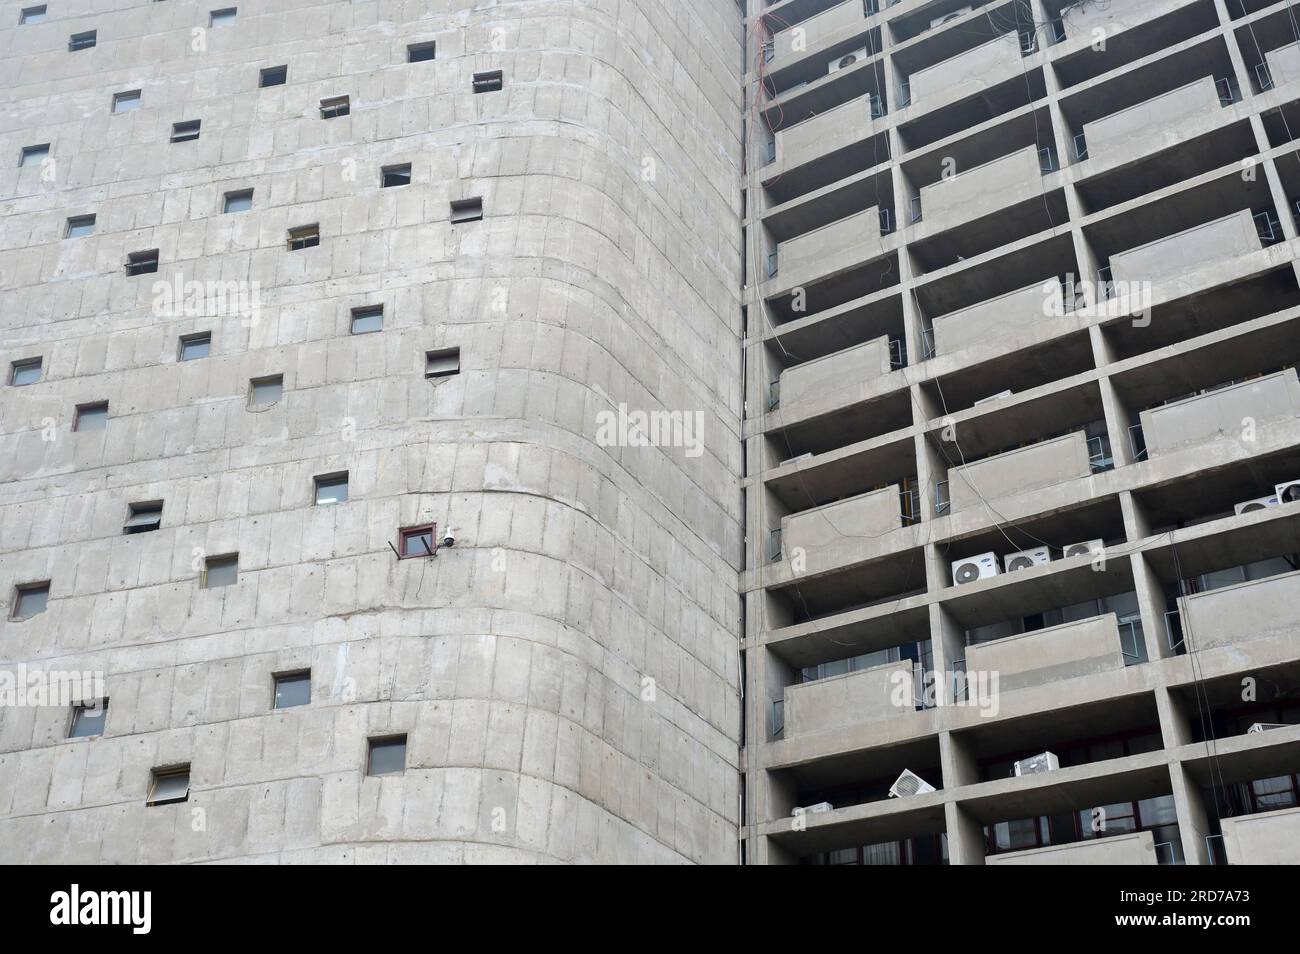 INDIEN, Gebiet der Union, Chandigarh-Stadt, der Generalplan der Stadt, unterteilt in Sektoren, wurde vom schweizer-französischen Architekten Le Corbusier im 1950", Sektor 1 Capitol-Komplex, Bürogebäude des Sekretariats von Punjab und der Regierung Haryana, entworfen von Le Corbusier, Fensterdetails erstellt Stockfoto